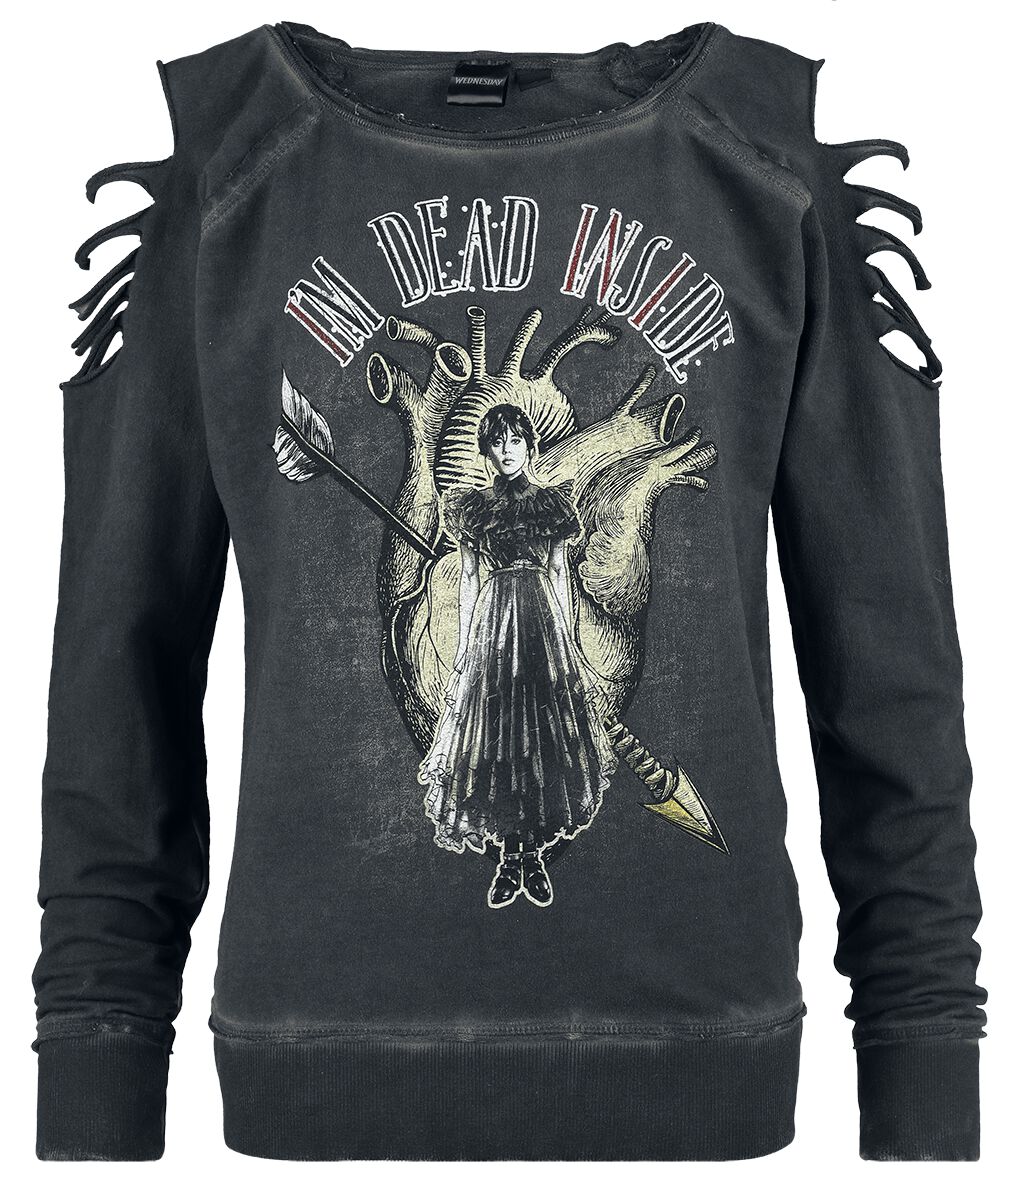 Wednesday Sweatshirt - I`m dead inside - S bis XXL - für Damen - Größe L - dunkelgrau  - EMP exklusives Merchandise!